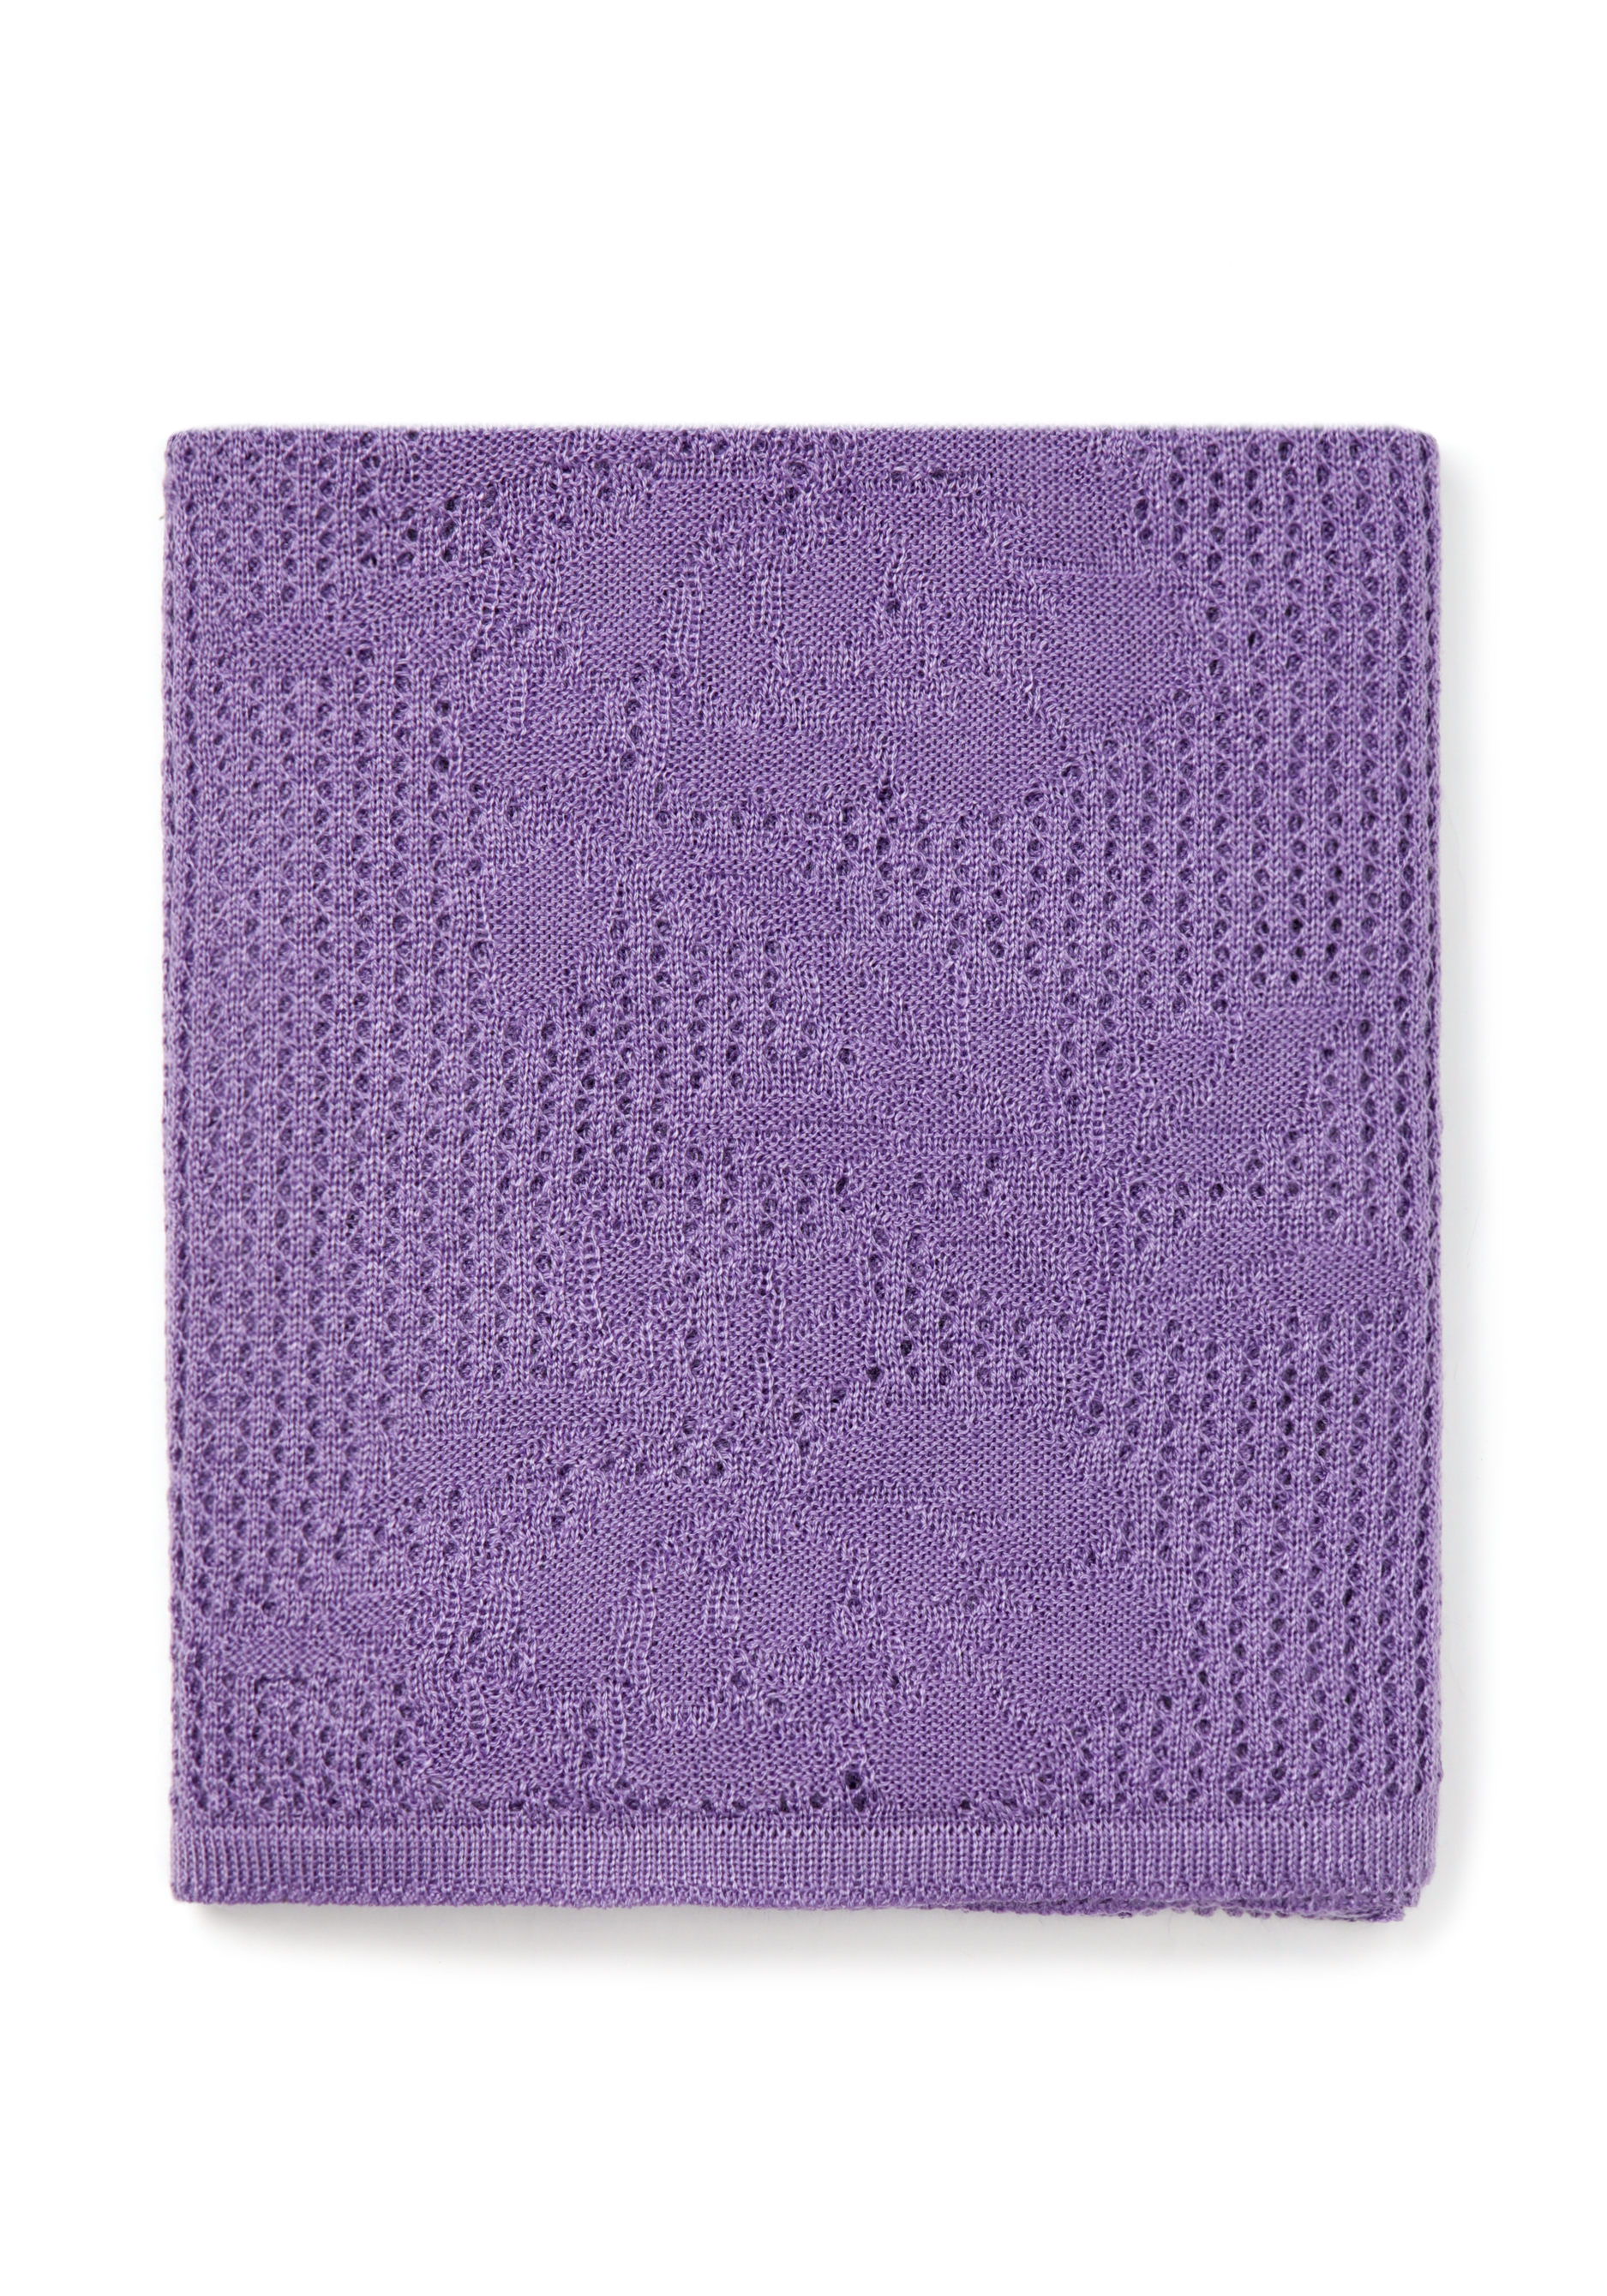 Палантин ажурный из натуральной шерсти Vivawool, цвет фиолетовый, размер единый - фото 5